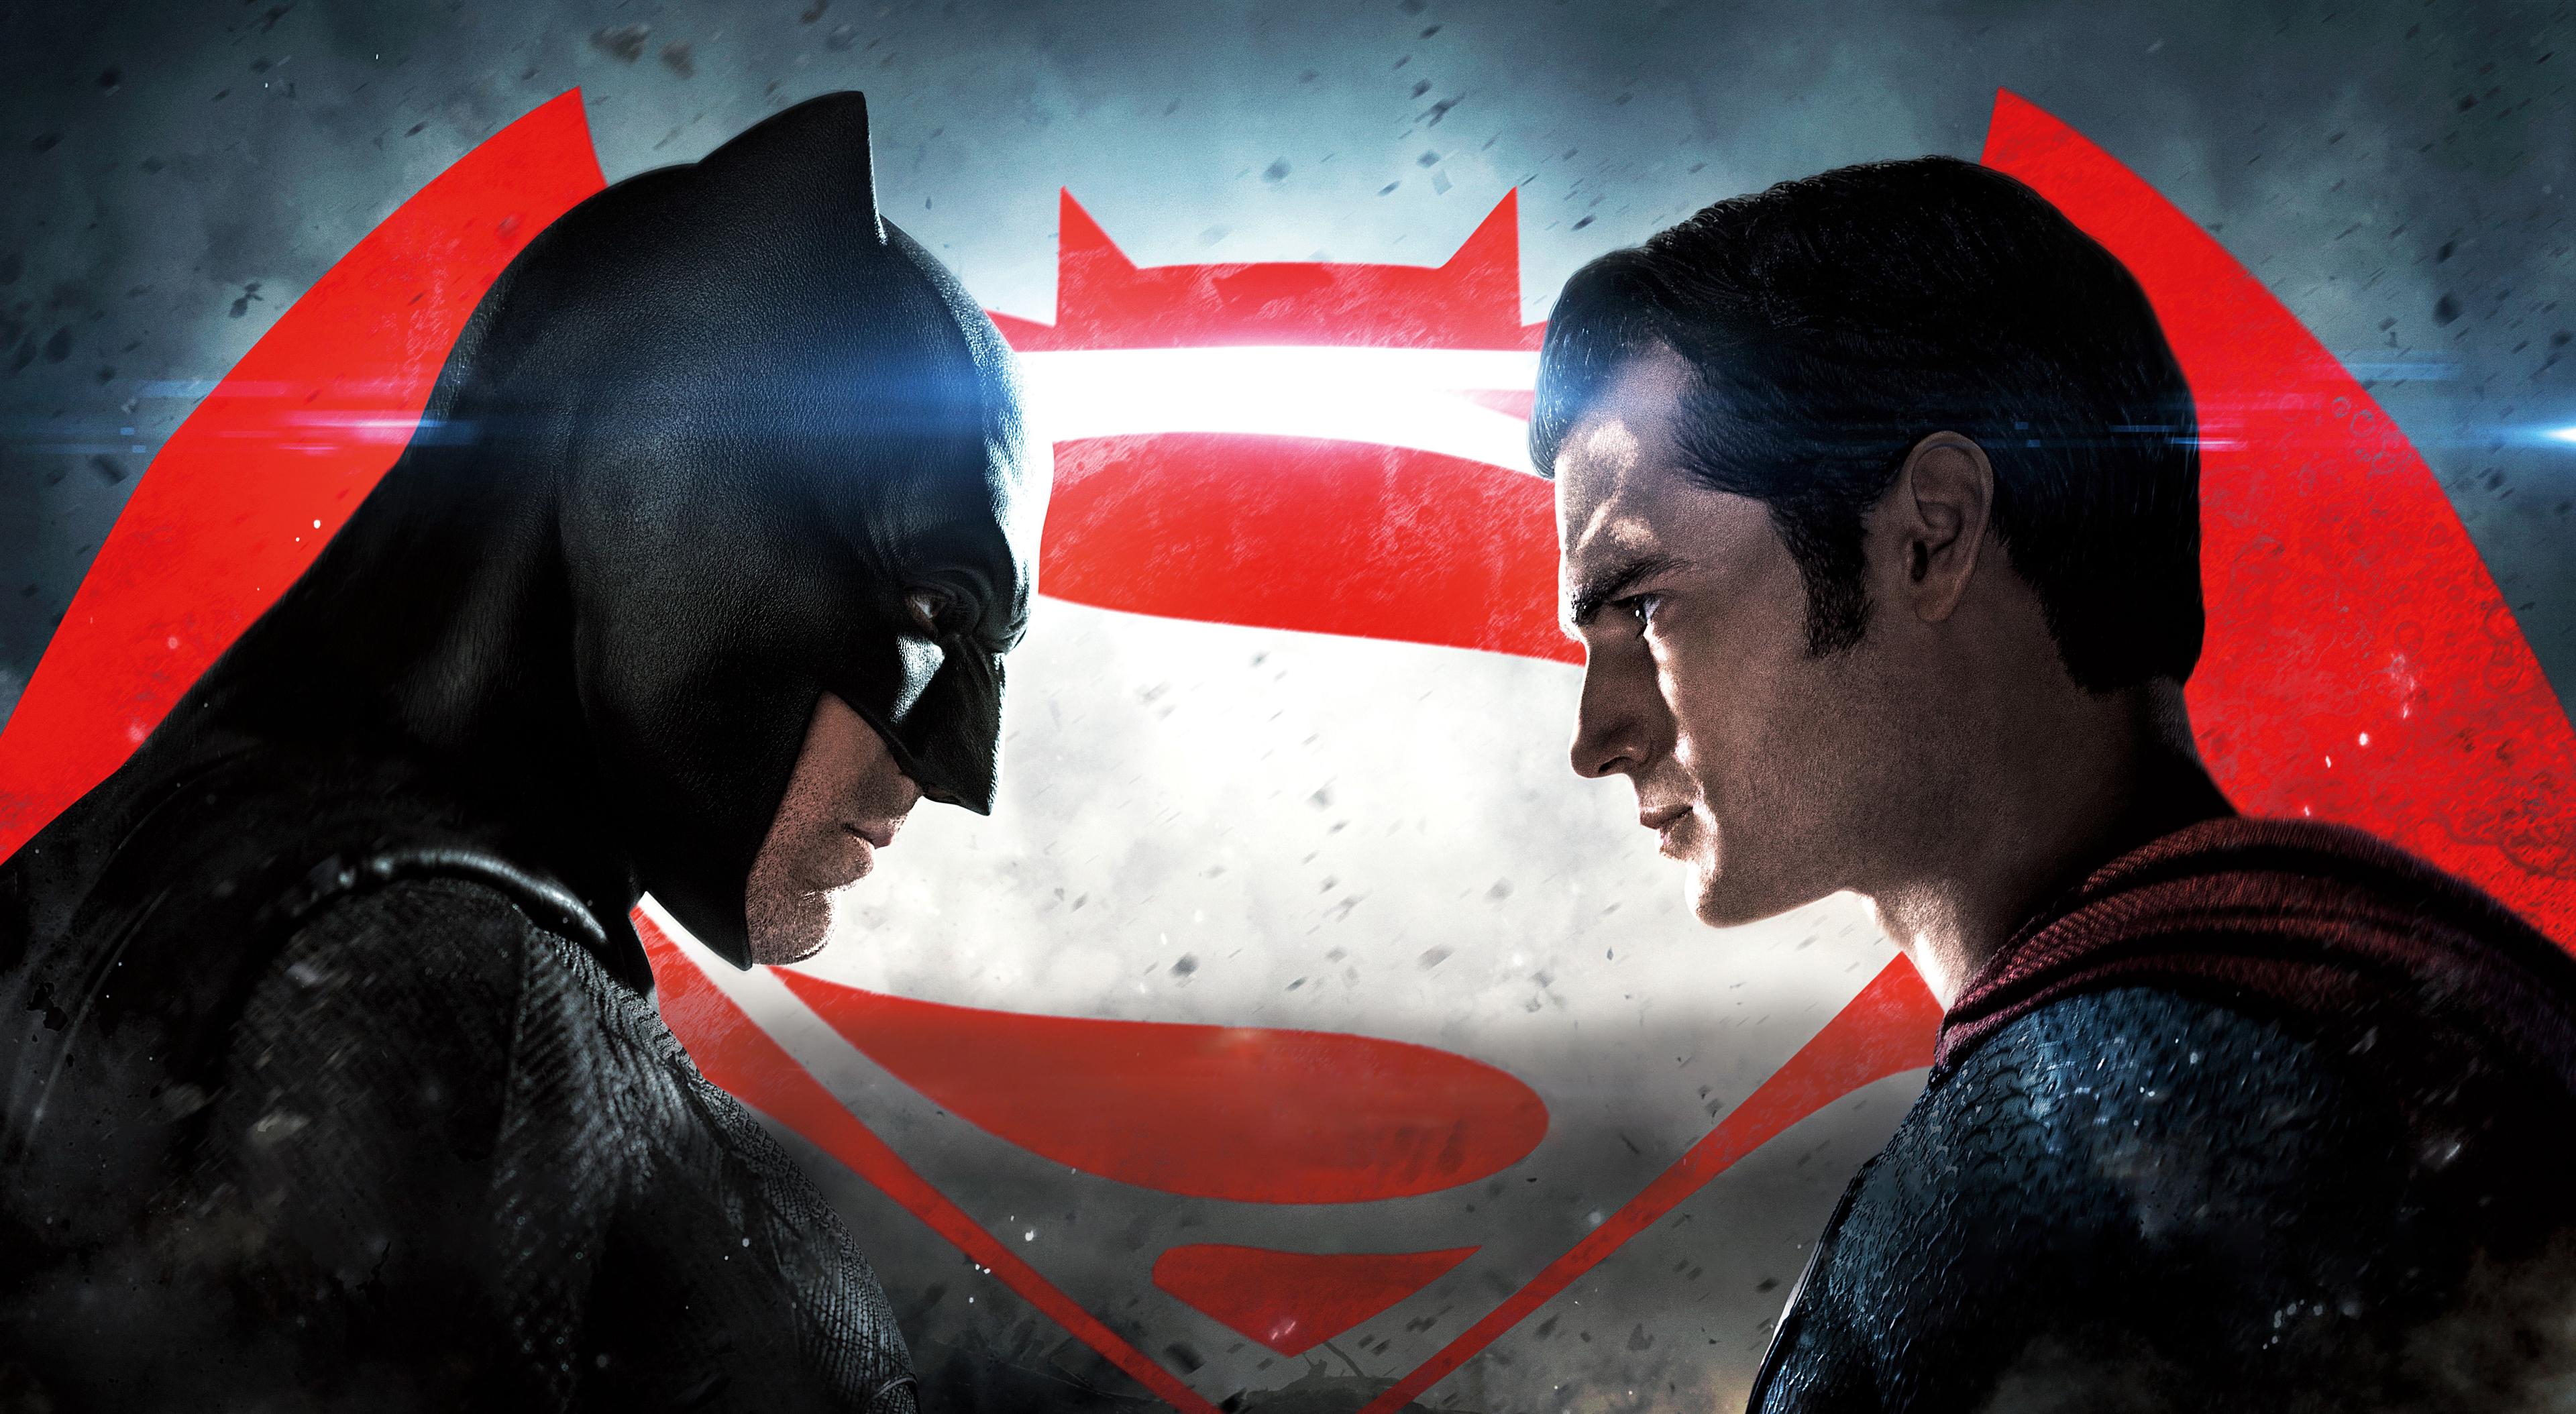 Batman Vs Superman entra para a lista de blu-rays mais vendidos de todos os tempos